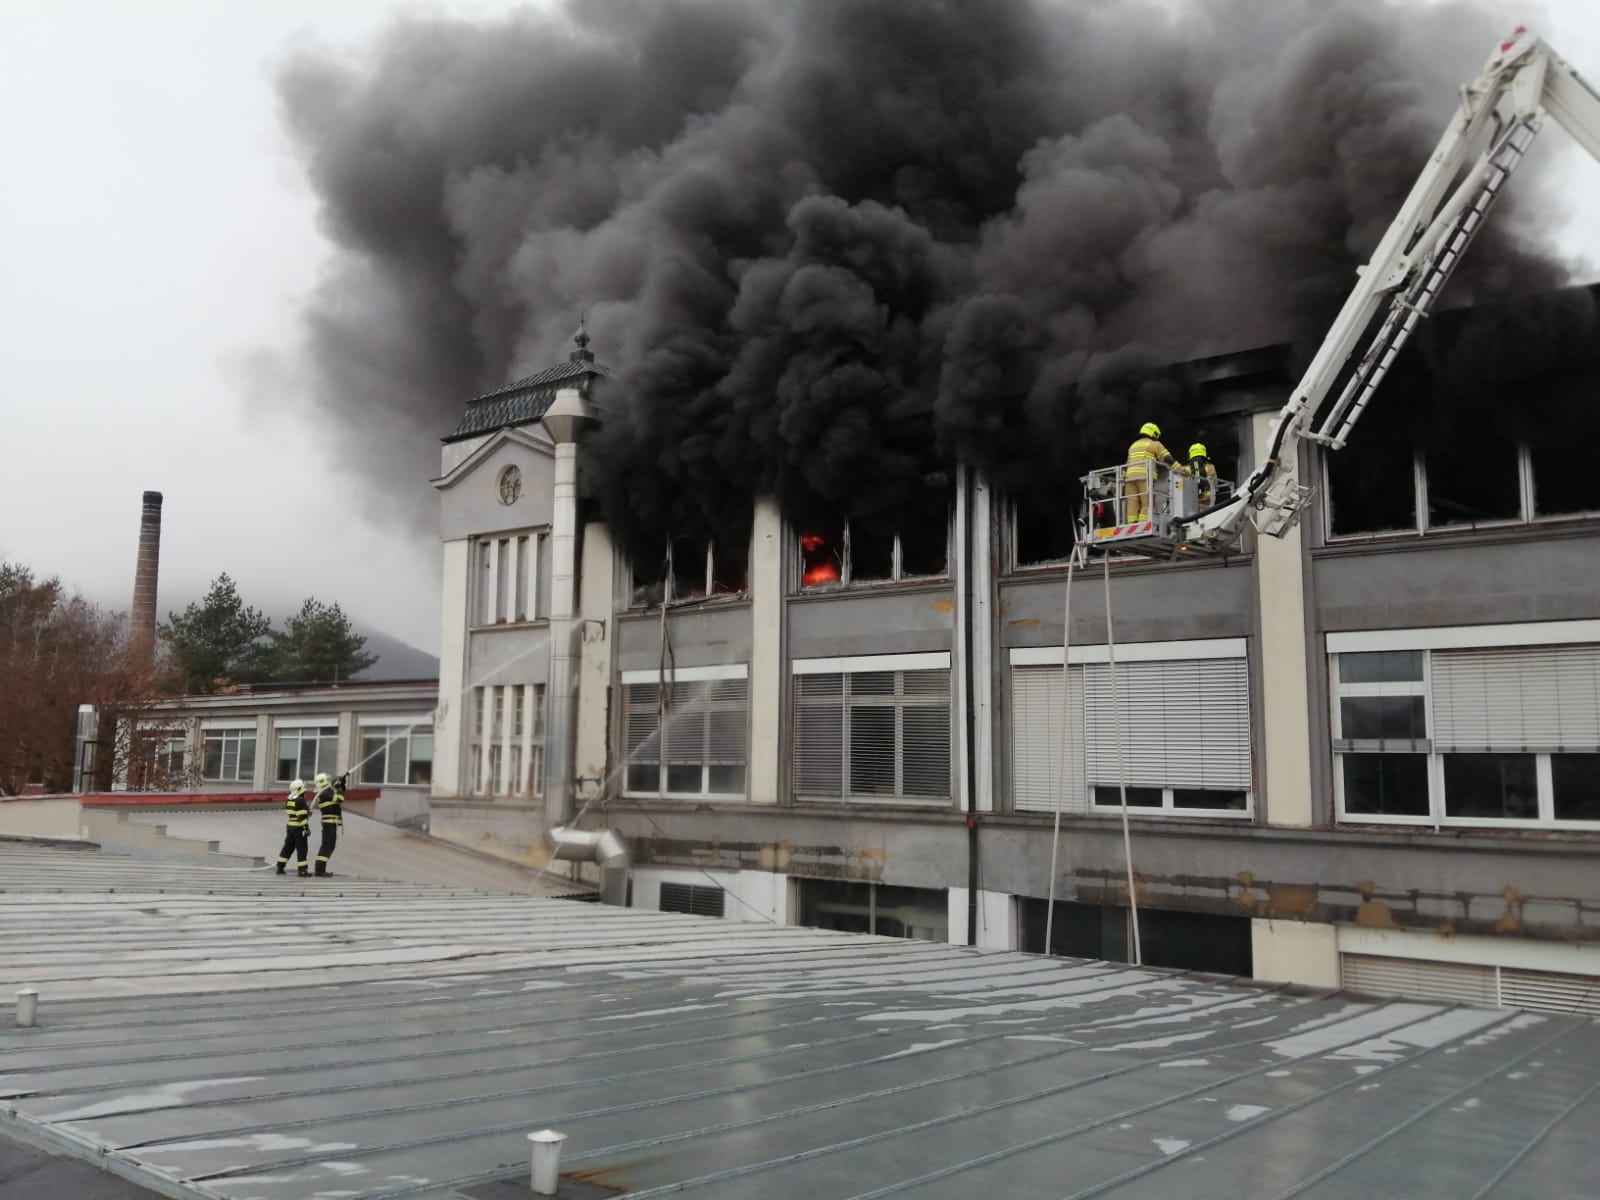 ÚLK_požár haly s plastovými modely v Mostě_hasiči z plošiny i ze střechy níže položené haly hasí hořící silně zakouřenou halu.jpg